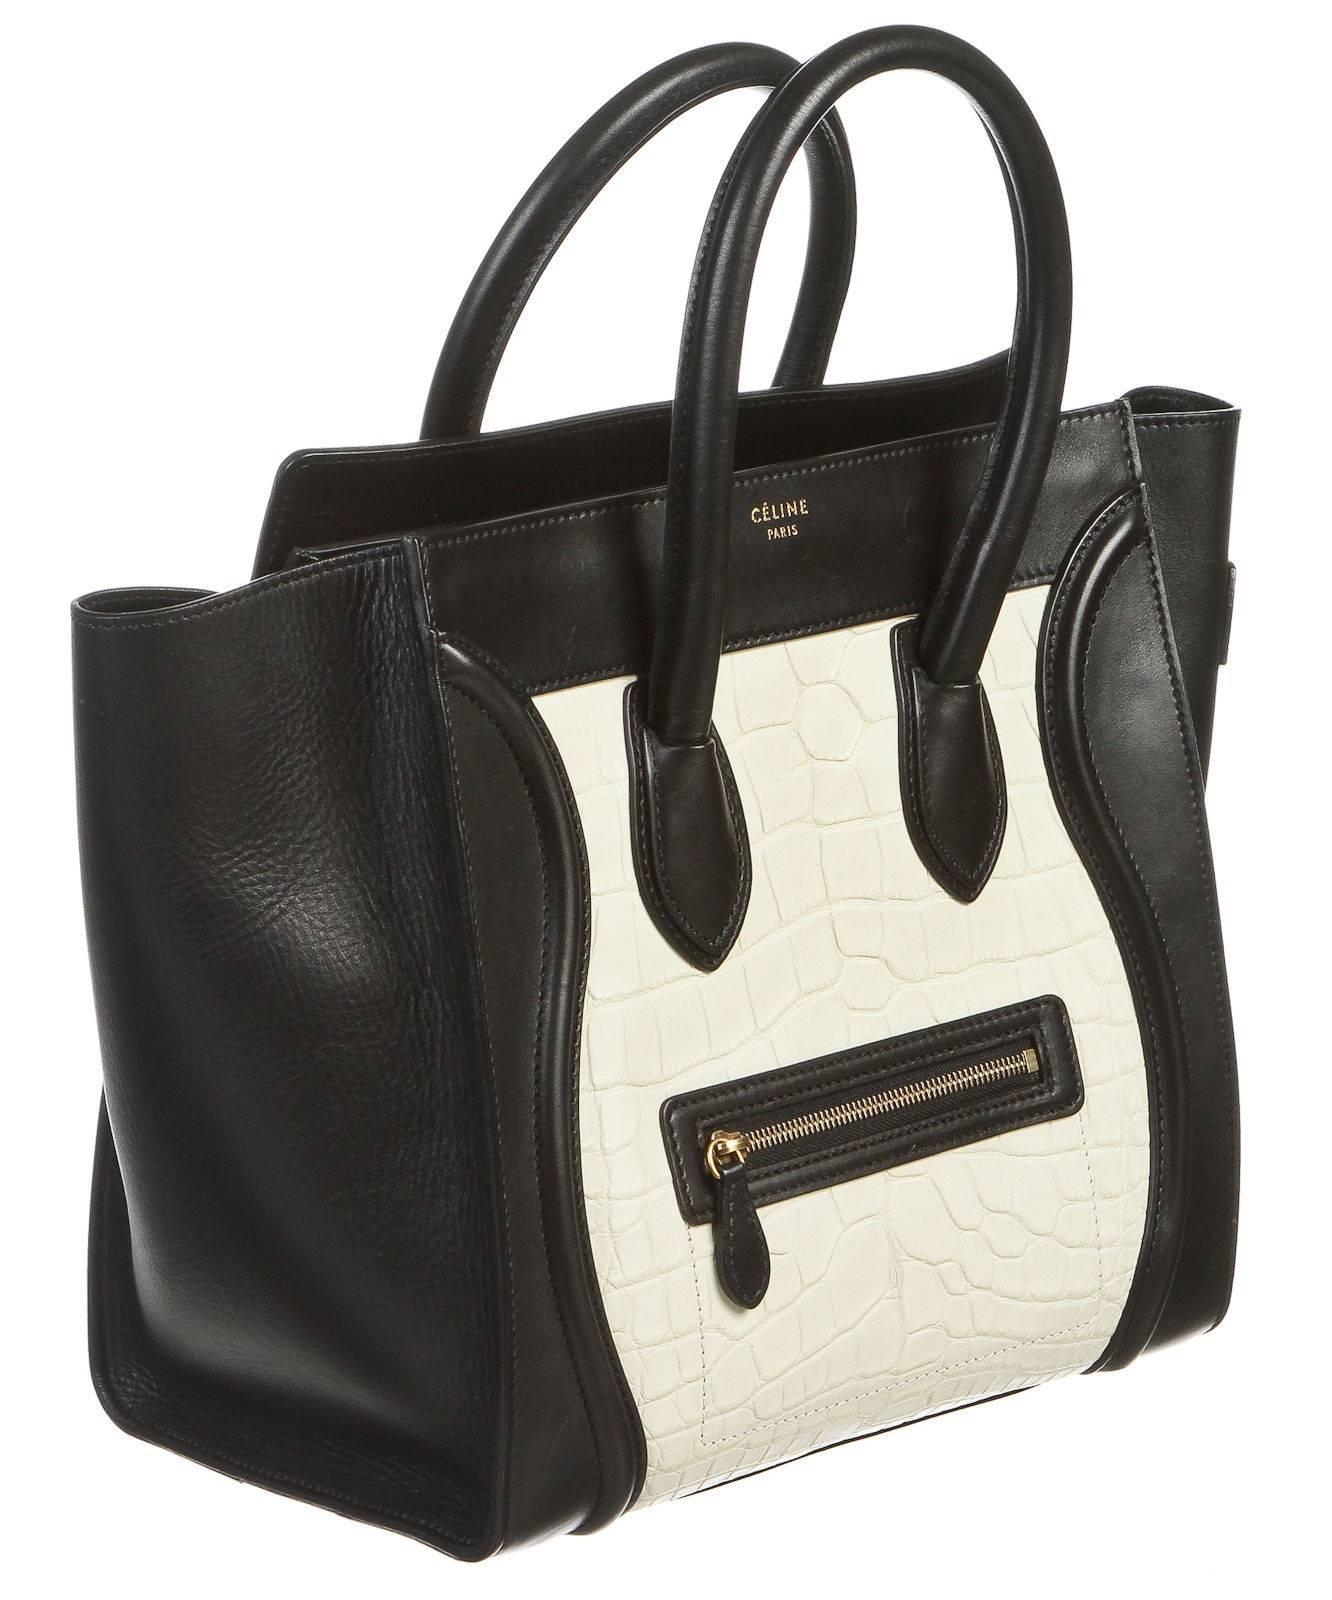 Celine Black Leather and White Crocodile Medium Luggage Tote Handbag In Fair Condition For Sale In Corona Del Mar, CA